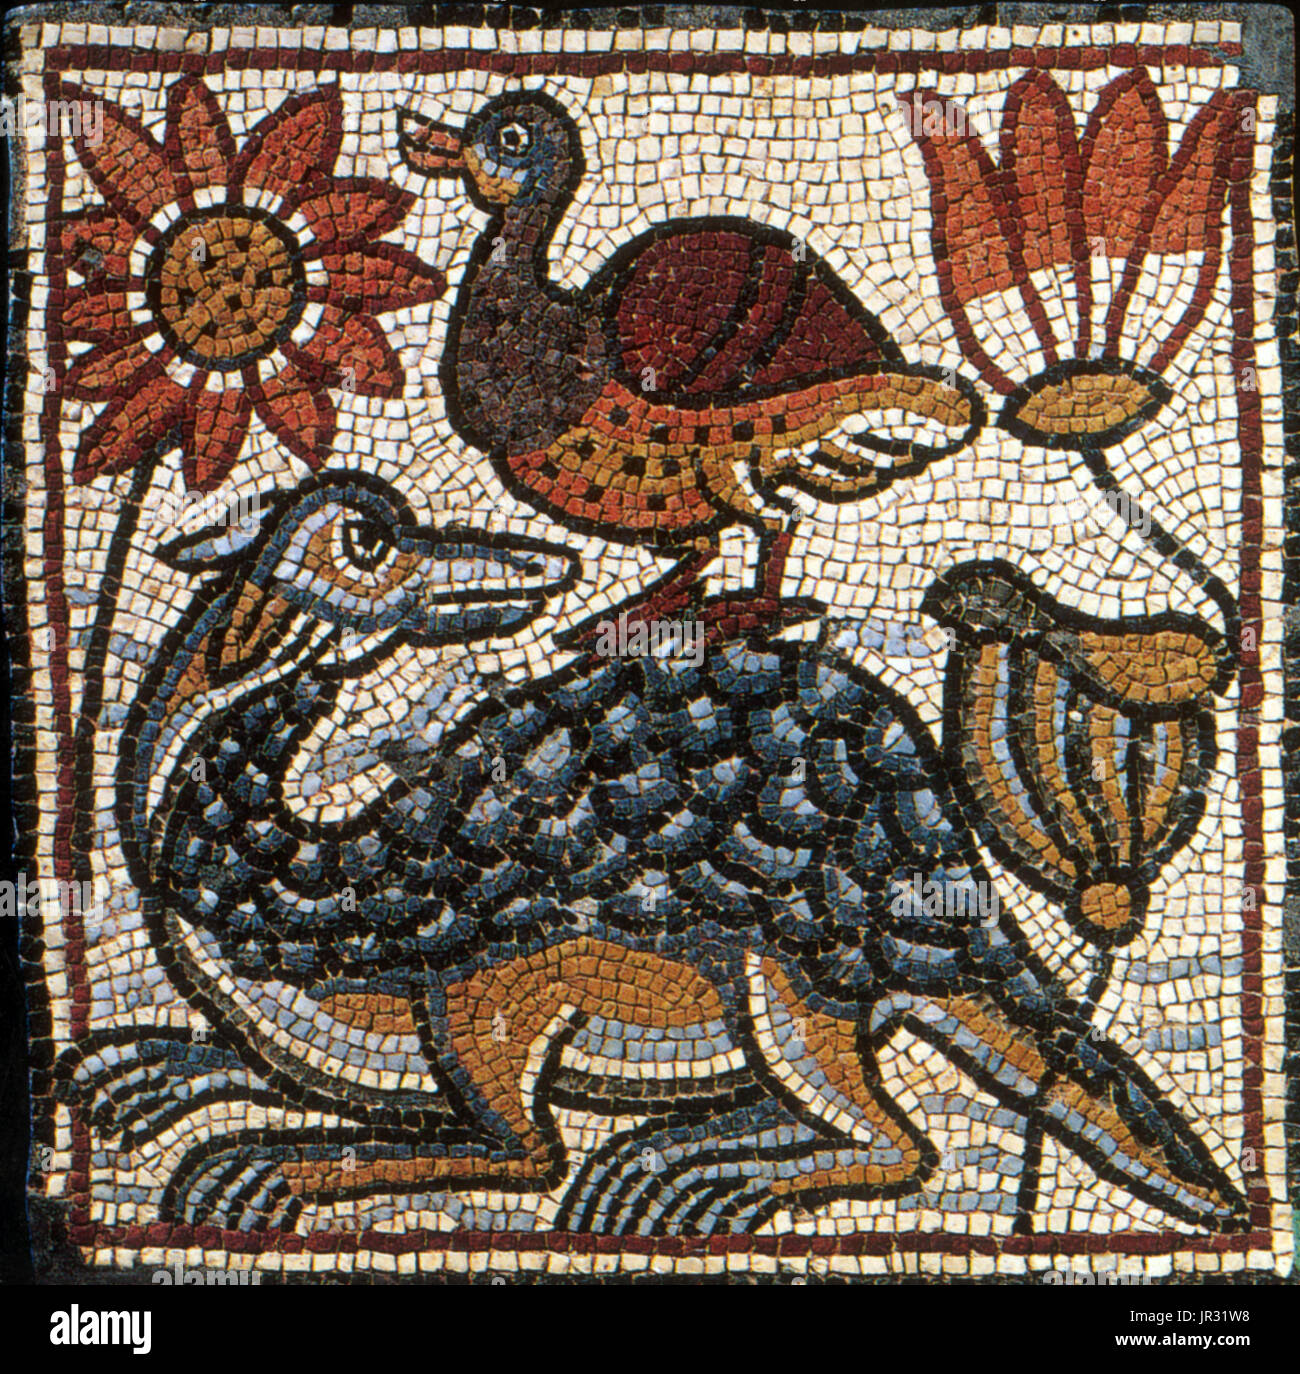 Mosaico bizantino, Pato y cocodrilo. (Moderno Theodorias Qasr Libia) era  una ciudad bizantina en la Cirenaica, fundado en 539 por el emperador  Justiniano y nombrado en honor de su esposa, la Emperatriz